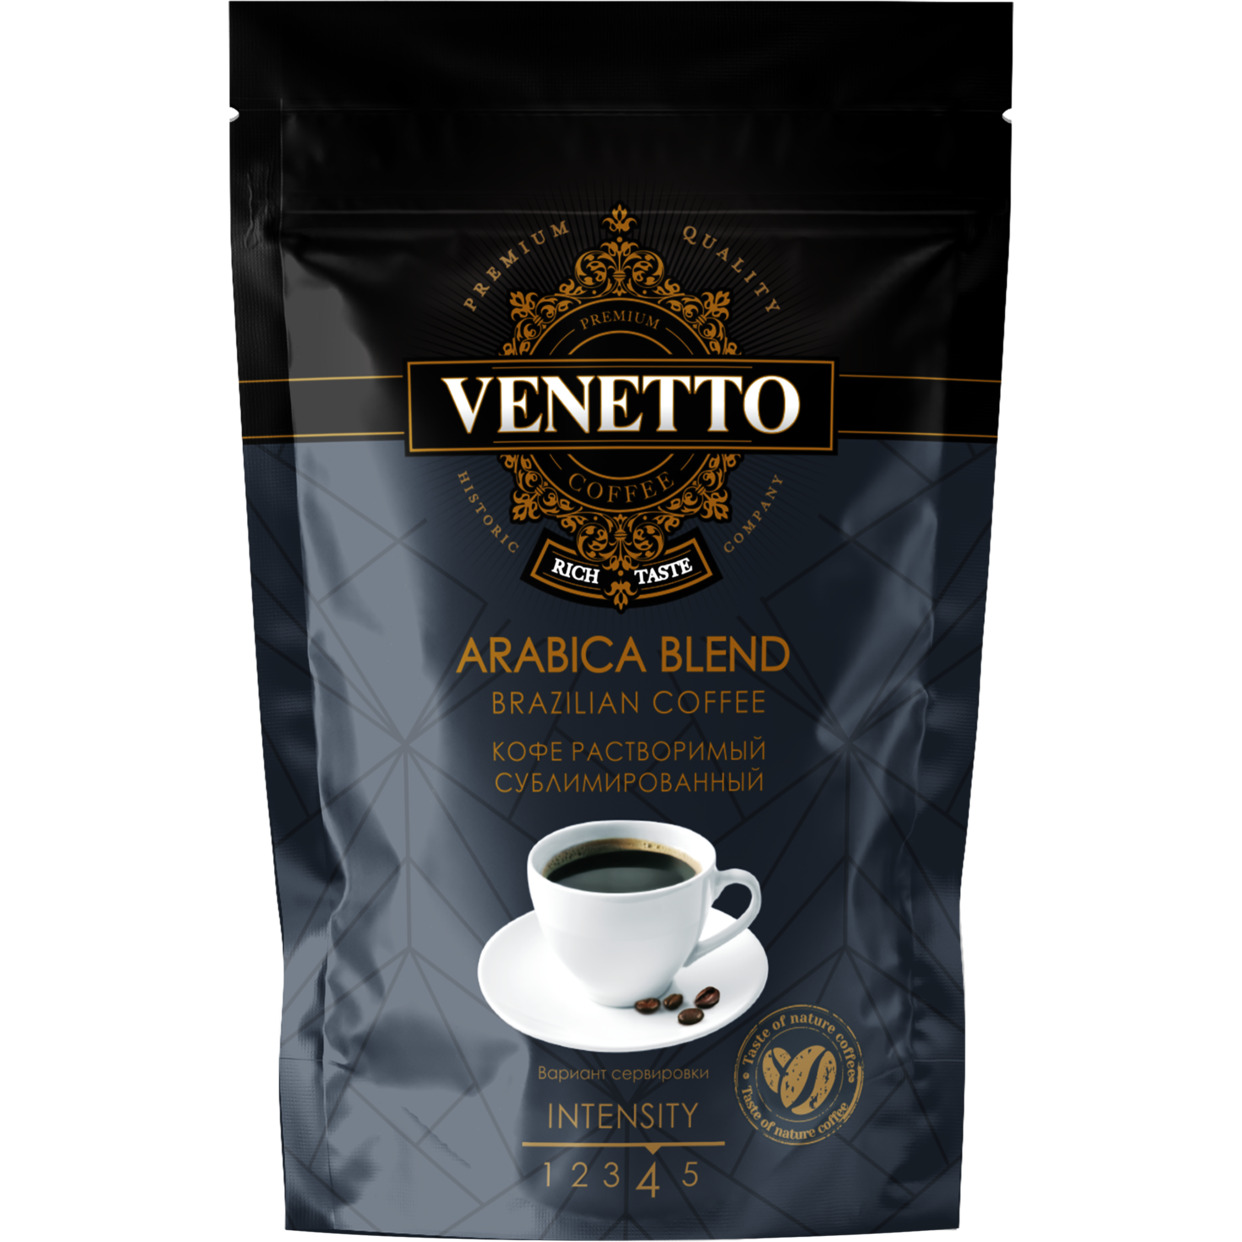 Кофе растворимый сублимированный VENETTO 130 г, дой-пак по акции в Пятерочке